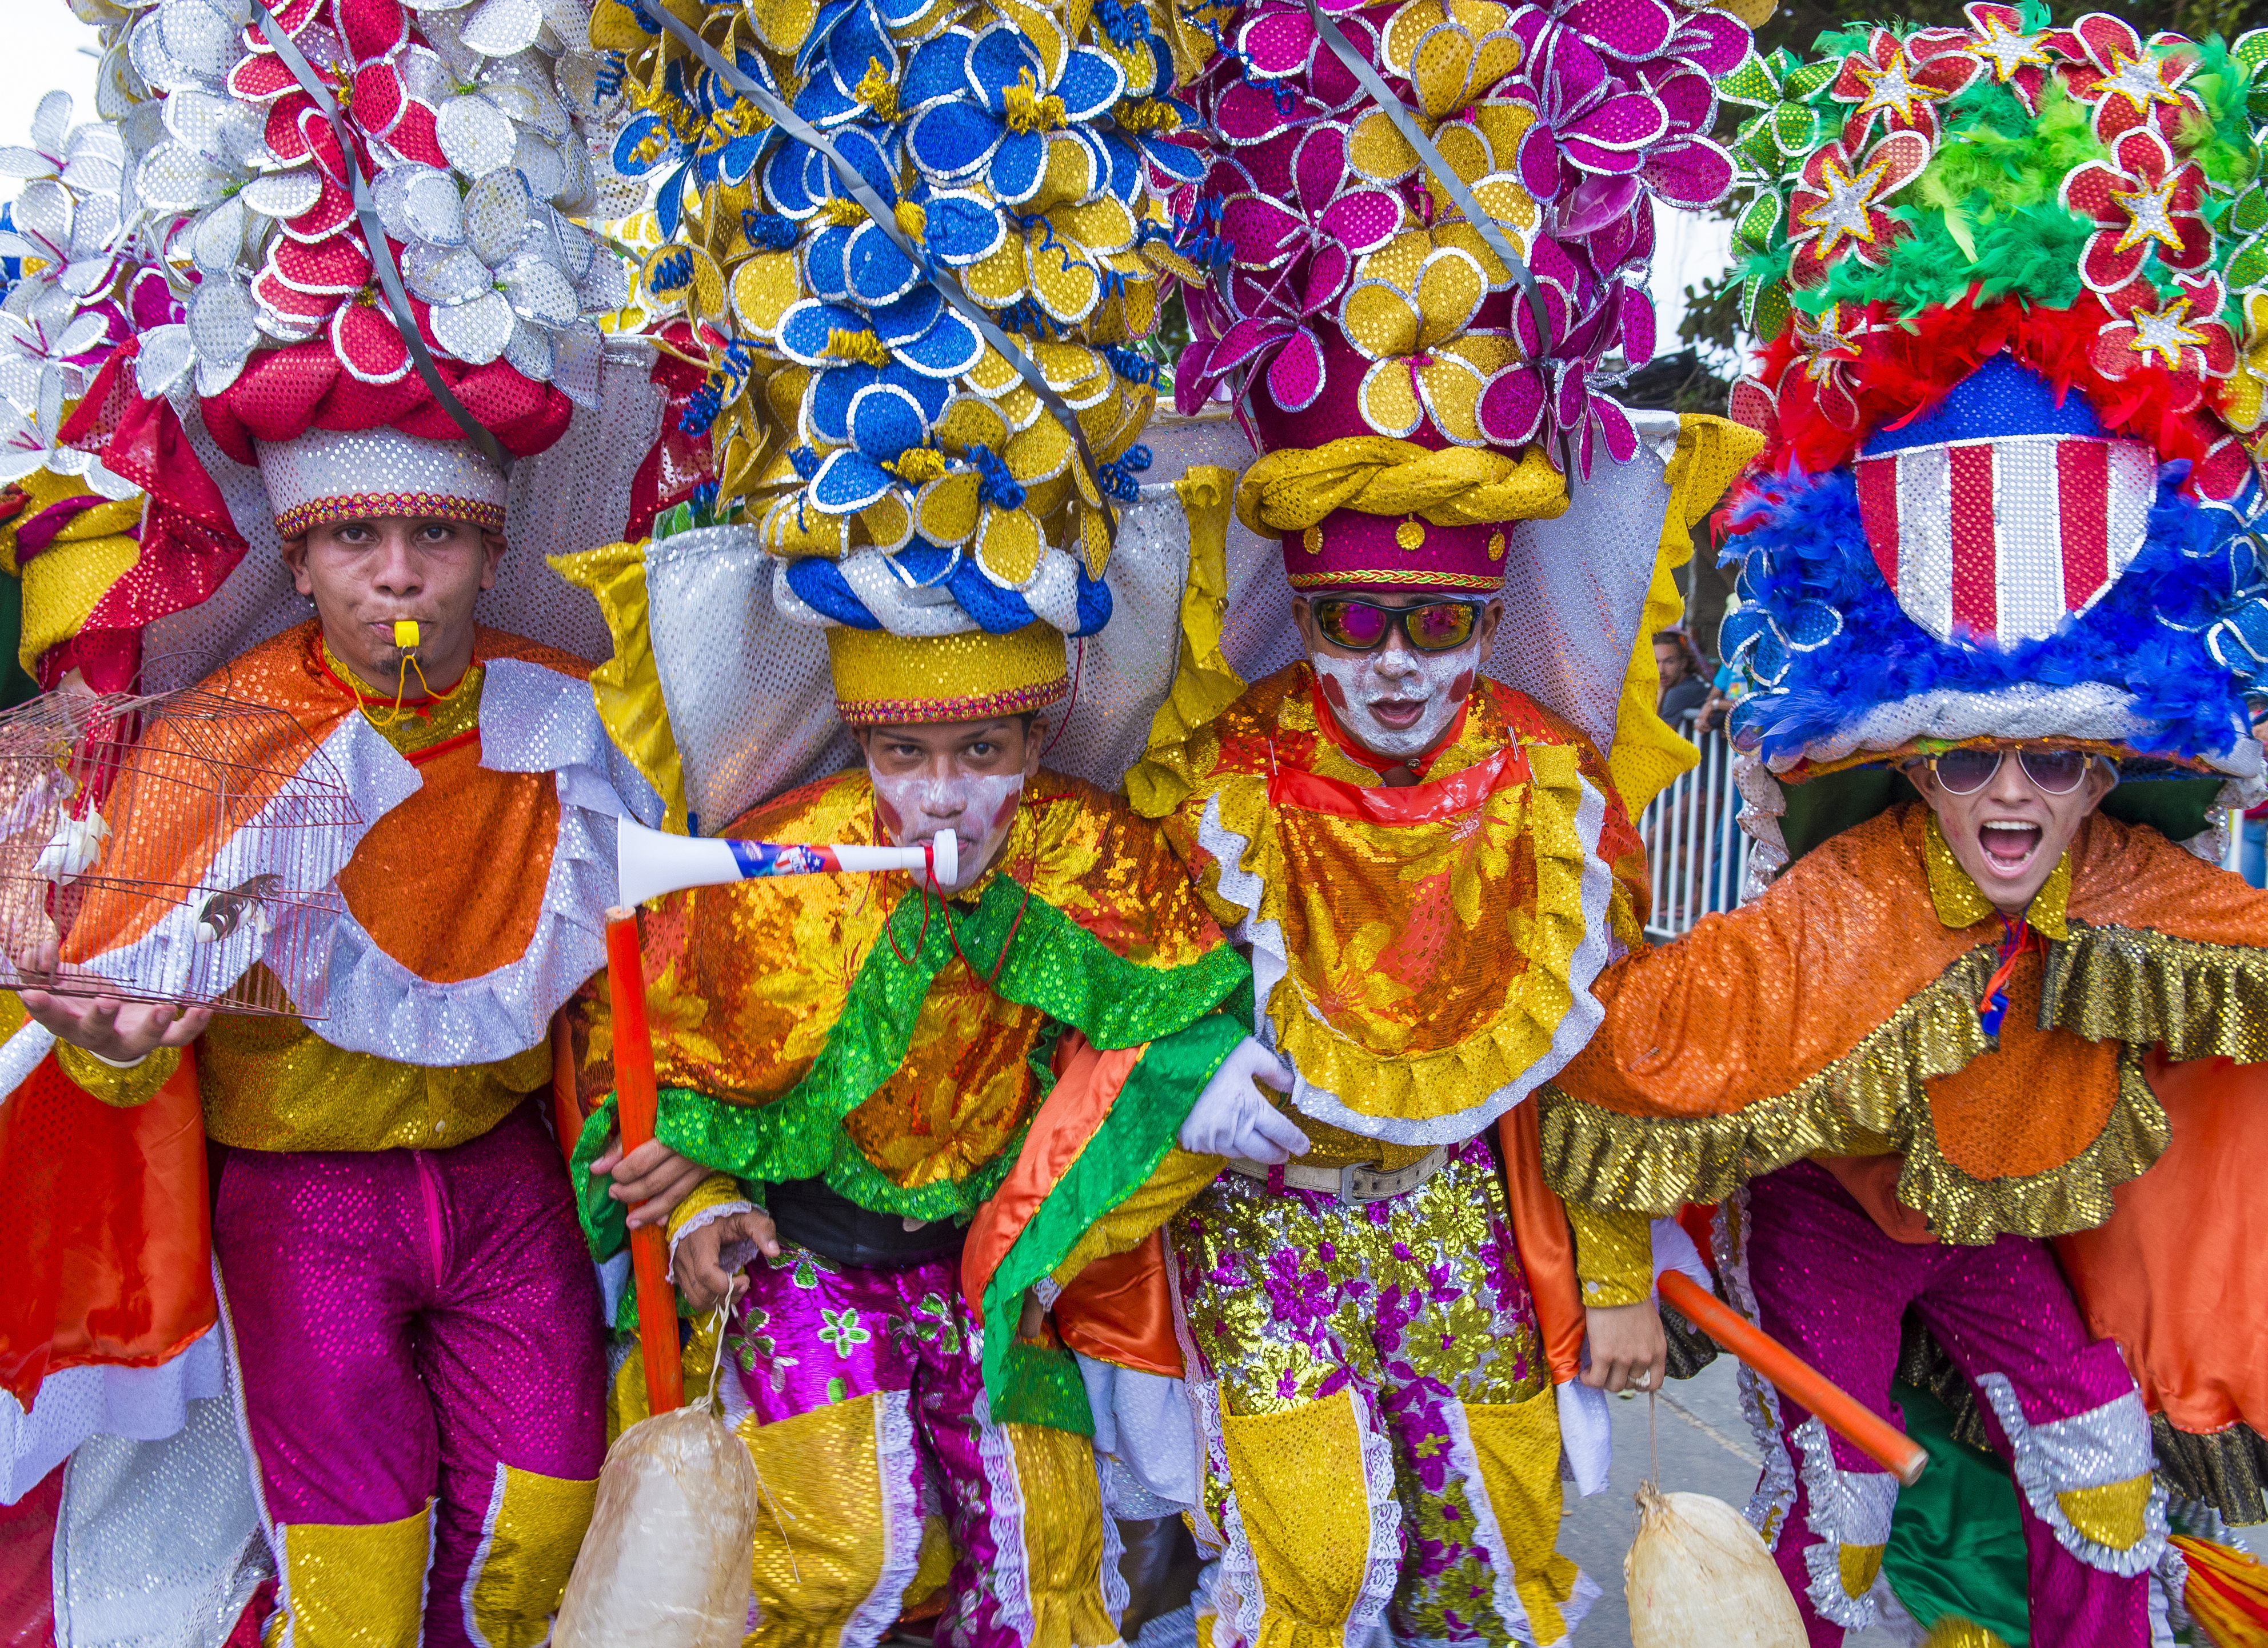 Los carnavales son fiestas tradicionales que fueron traídas a América por los colonizadores españoles, pero debido a las influencias indígena y africana se mezclaron a tal punto que cobraron un significado propio, incluso una identidad propia en cada país o ciudad. Foto: Kobby Dagan - Shutterstock